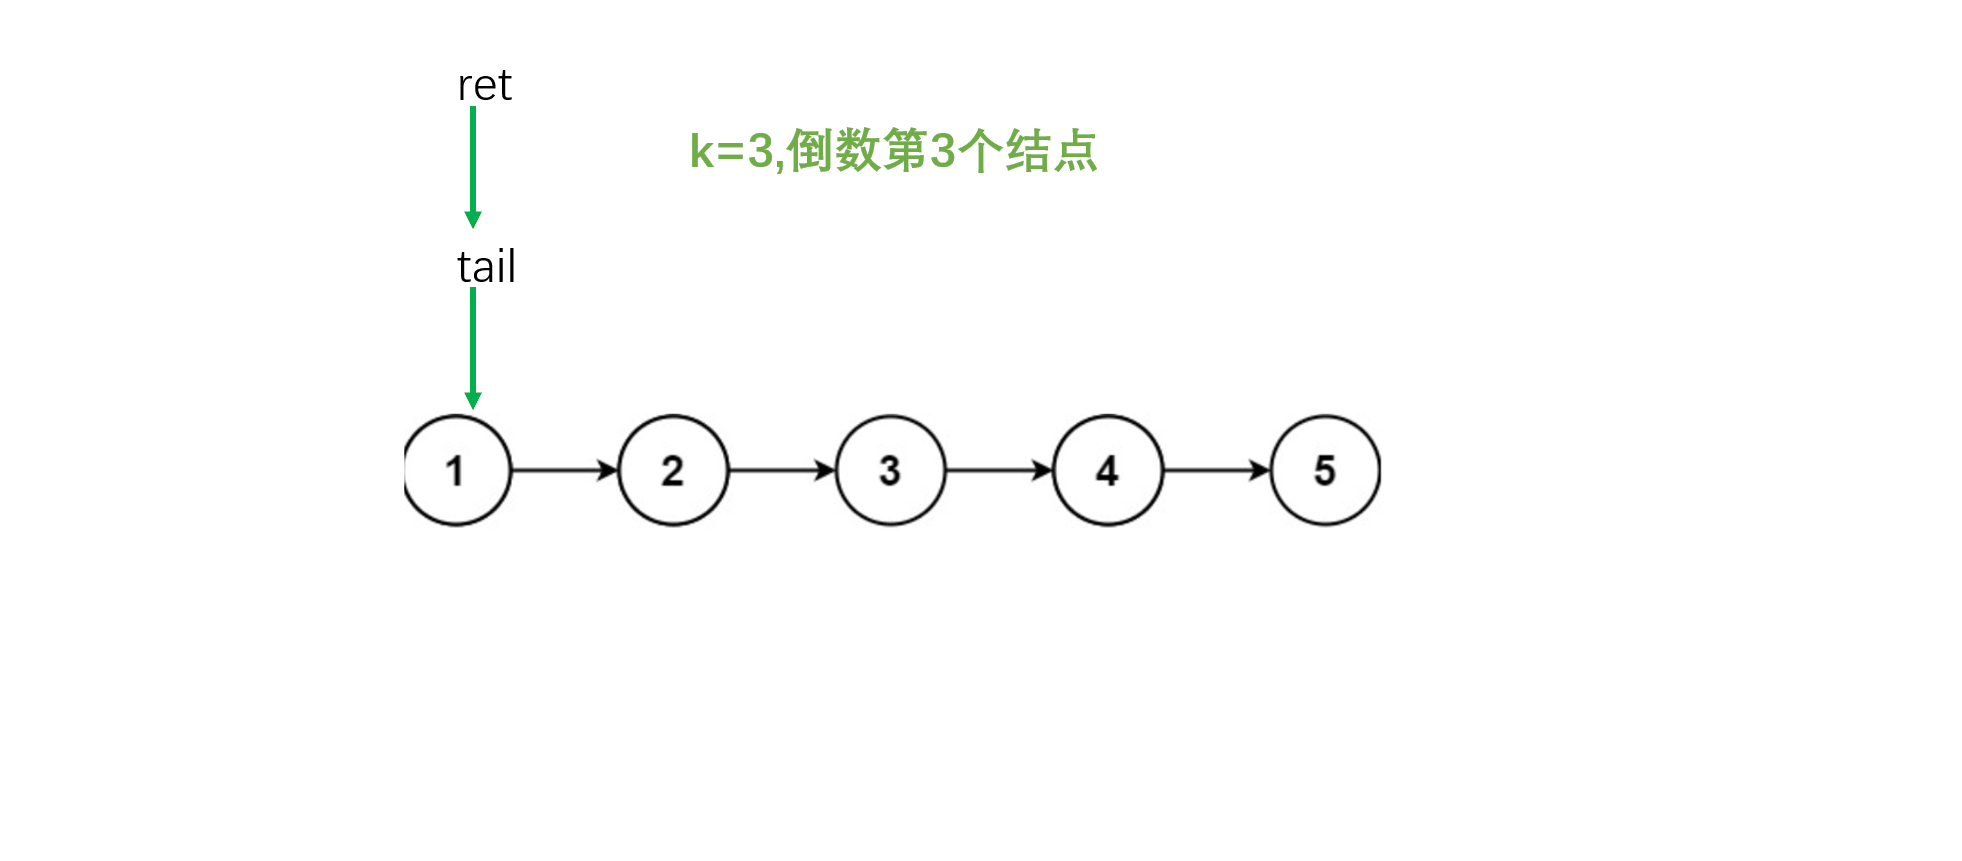 链表中的倒数第k个结点 合并两个链表 分割链表 链表的回文结构